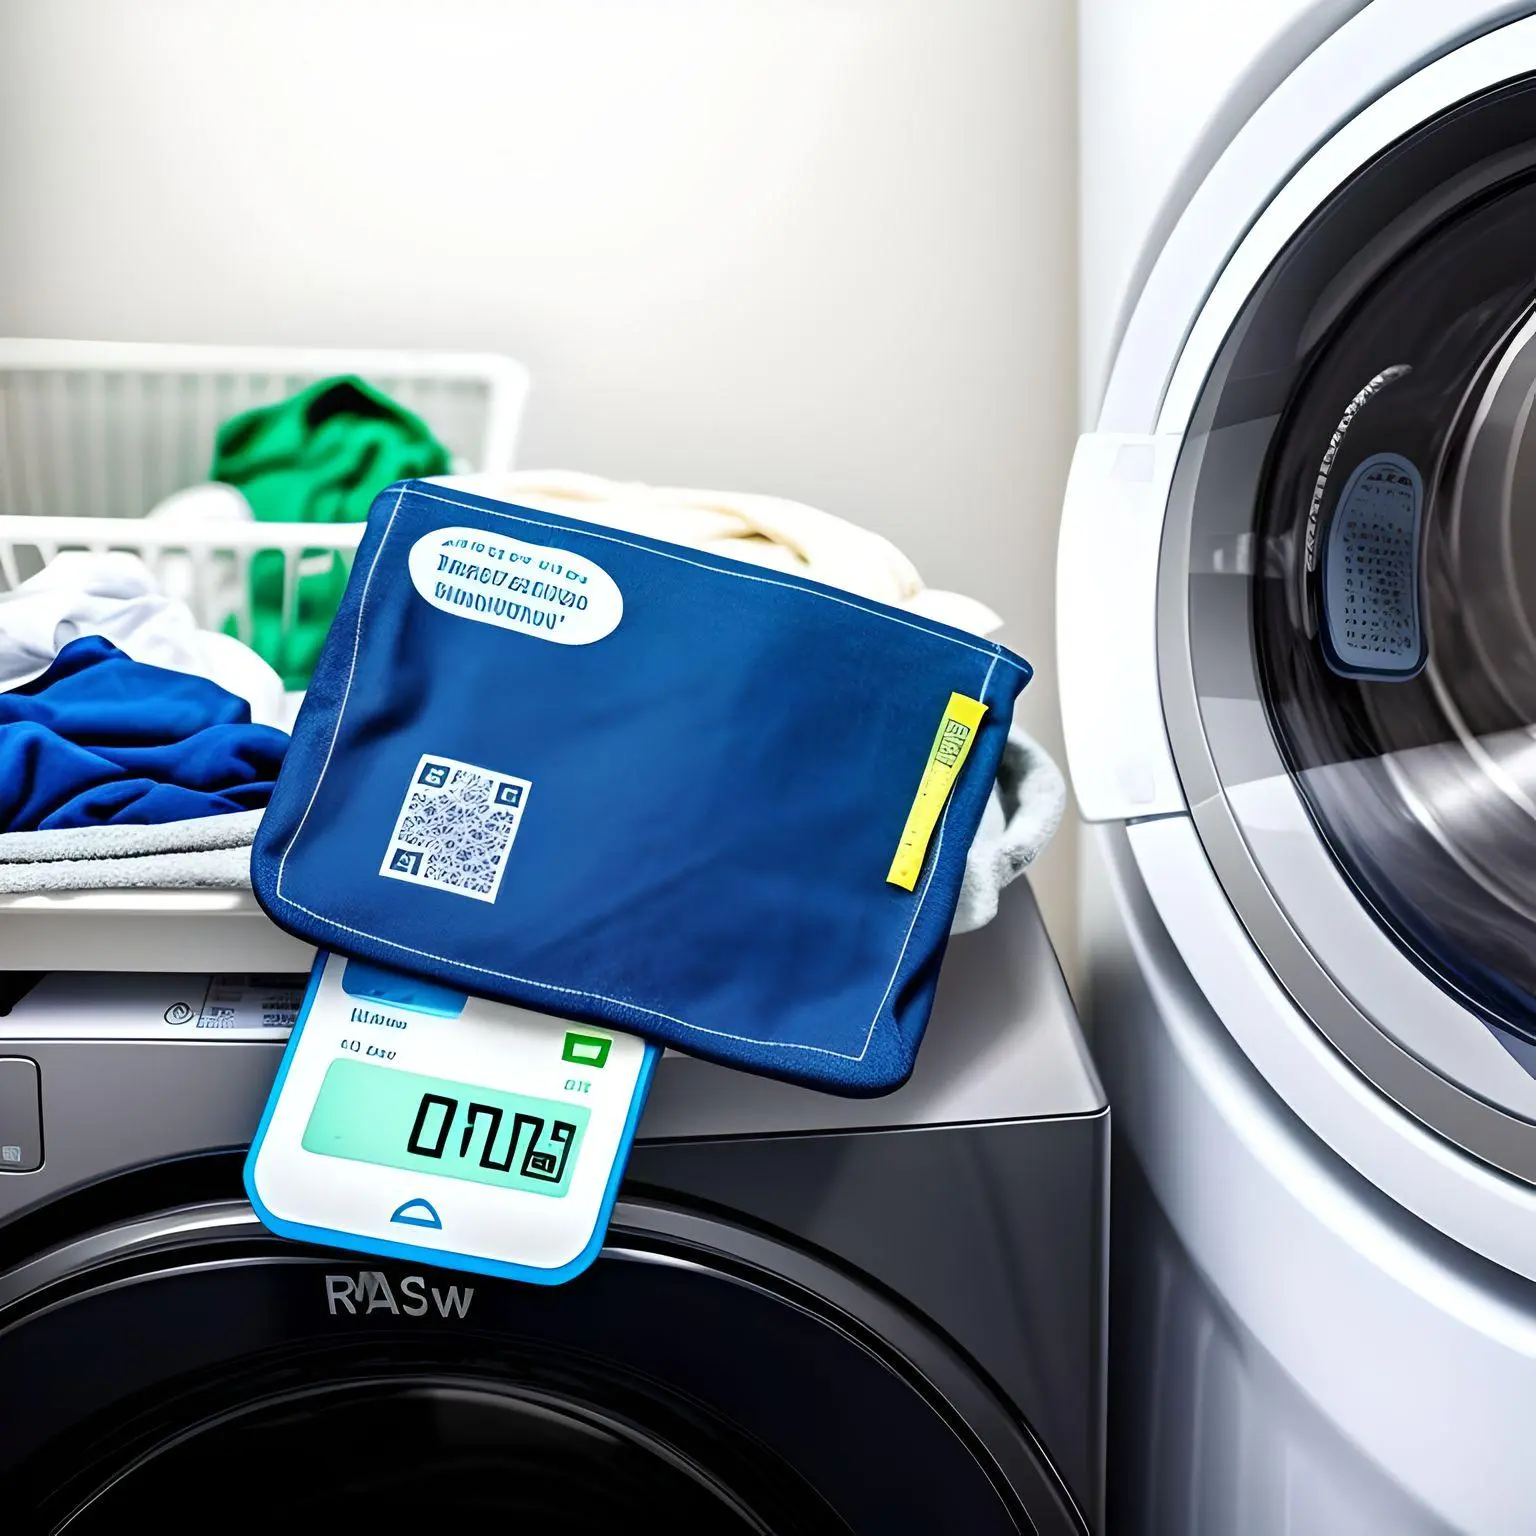 RFID Laundry tracking